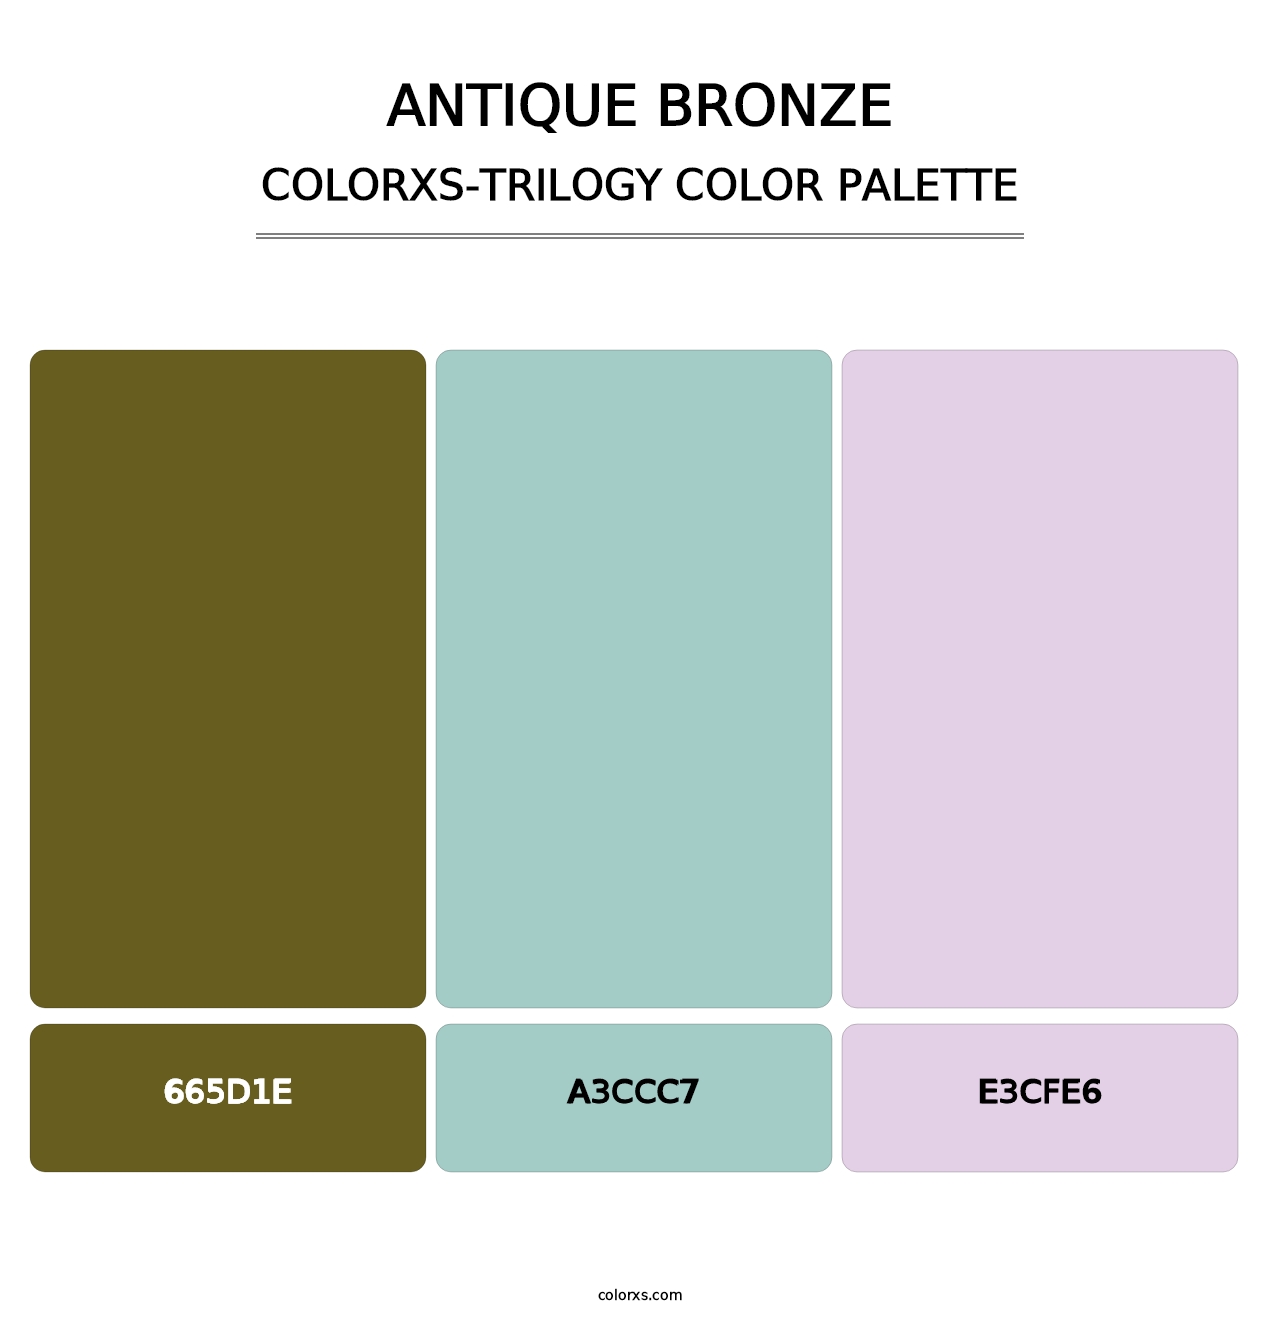 Antique Bronze - Colorxs Trilogy Palette